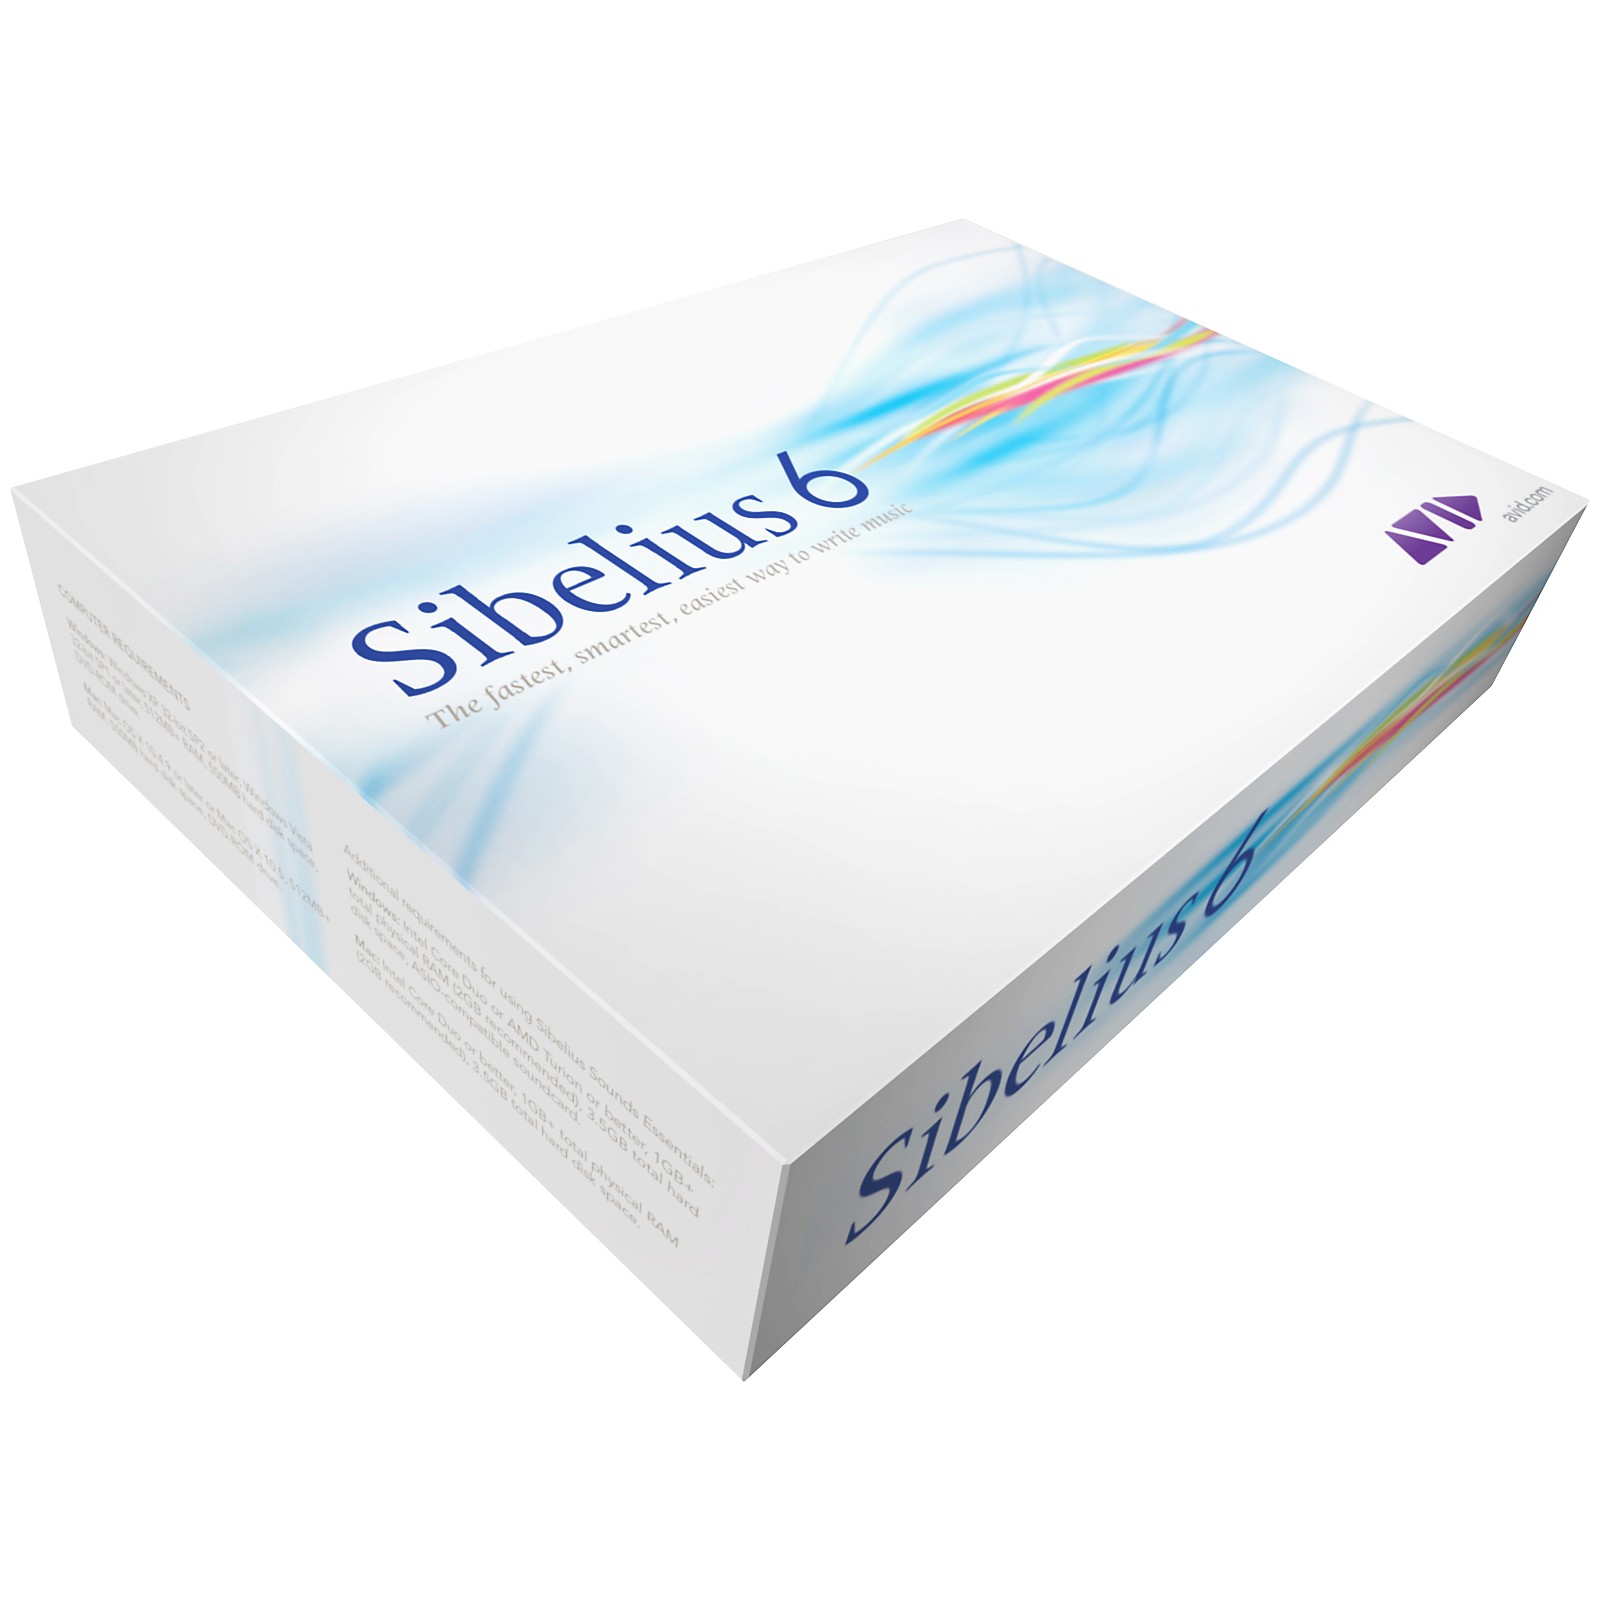 buy sibelius software